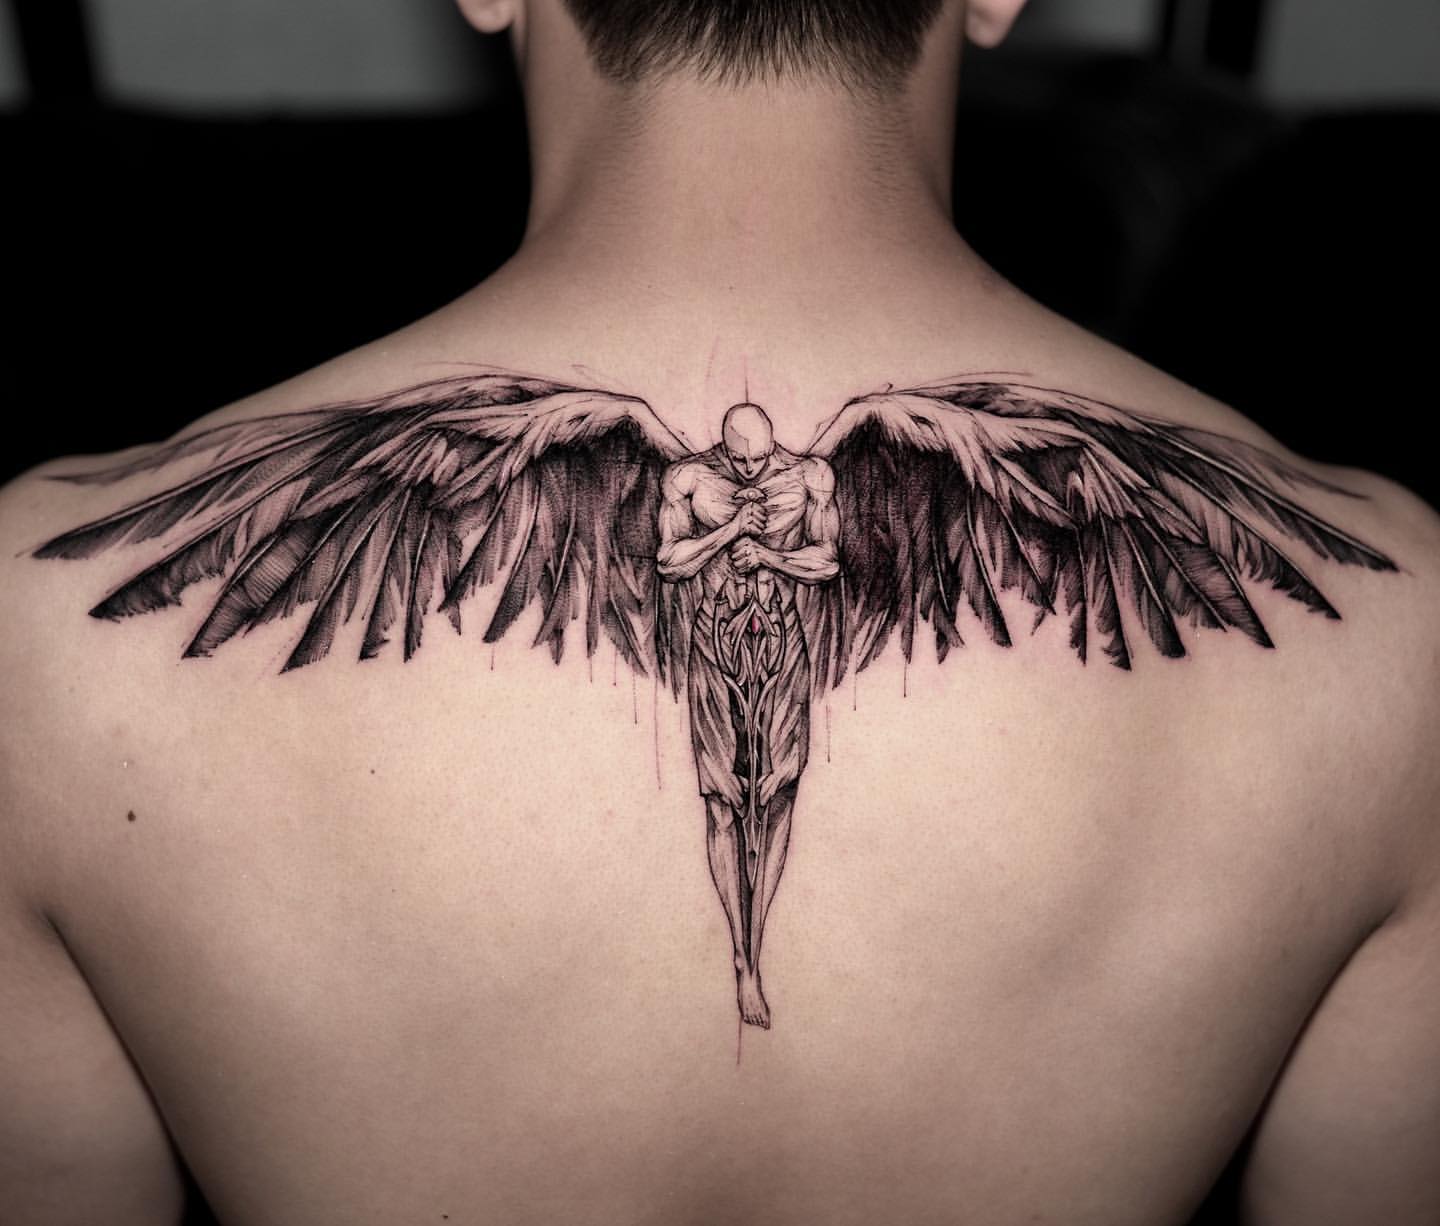 Tattoo uploaded by Teneile Napoli • Tattoo by Teneile Napoli #TeneileNapoli  #necktattoos #necktattoo #neck #jobstopper #blackandgrey #sculpture  #fineart #angel #wings #feathers #portrait #ladyhead • Tattoodo